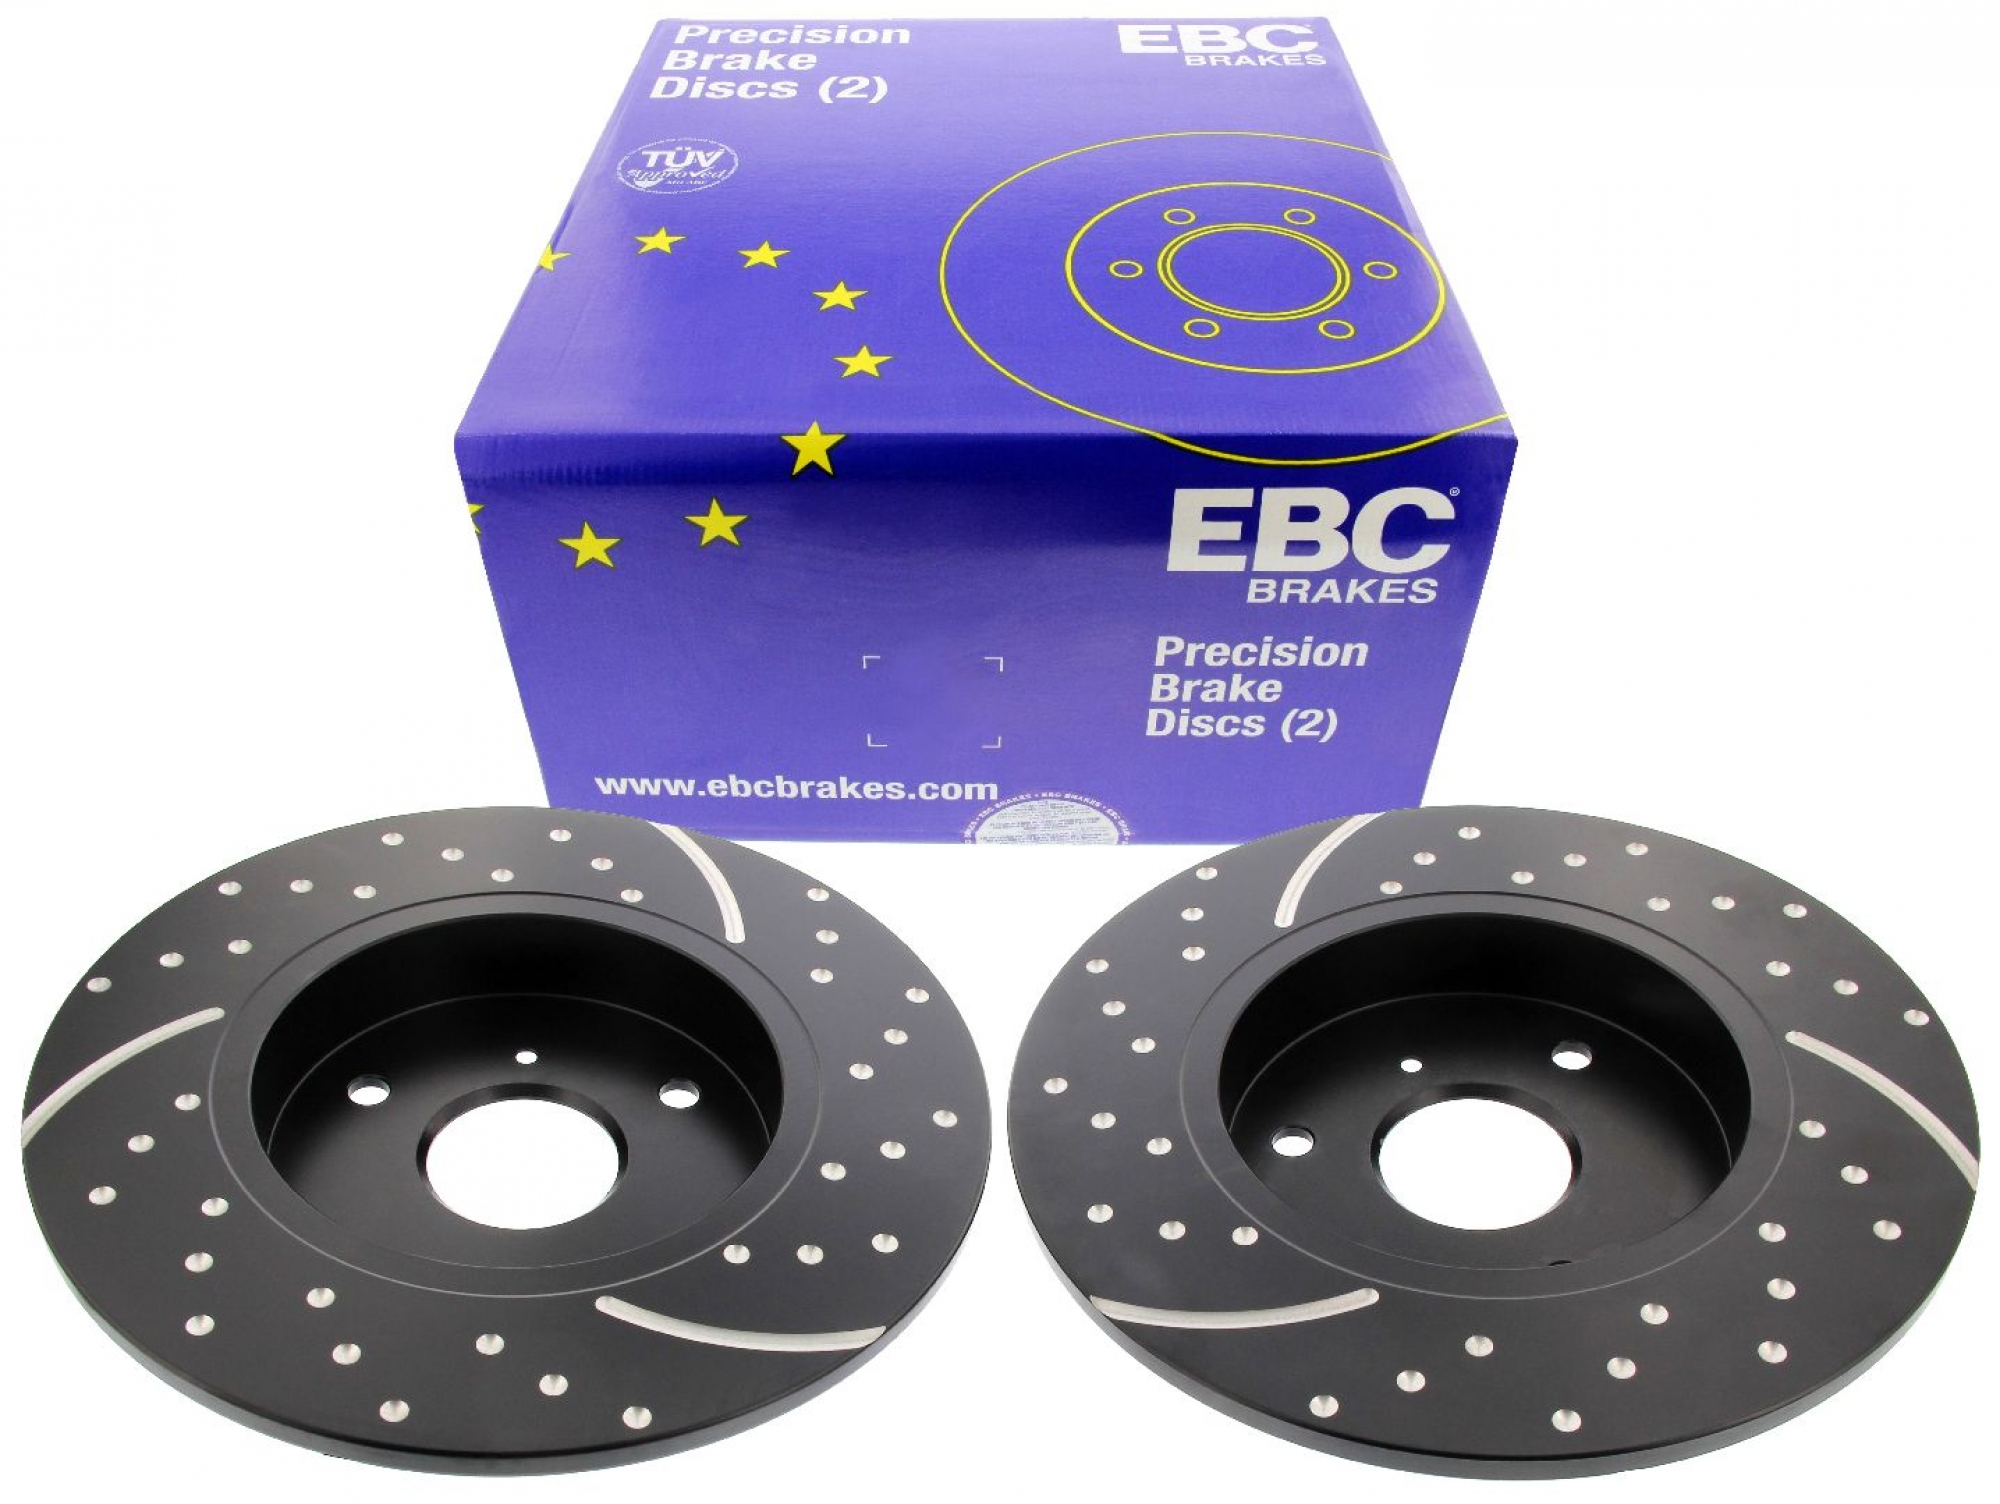 EBC-Bremsscheiben, Turbo Groove Disc Black (2-teilig), VA, Smart